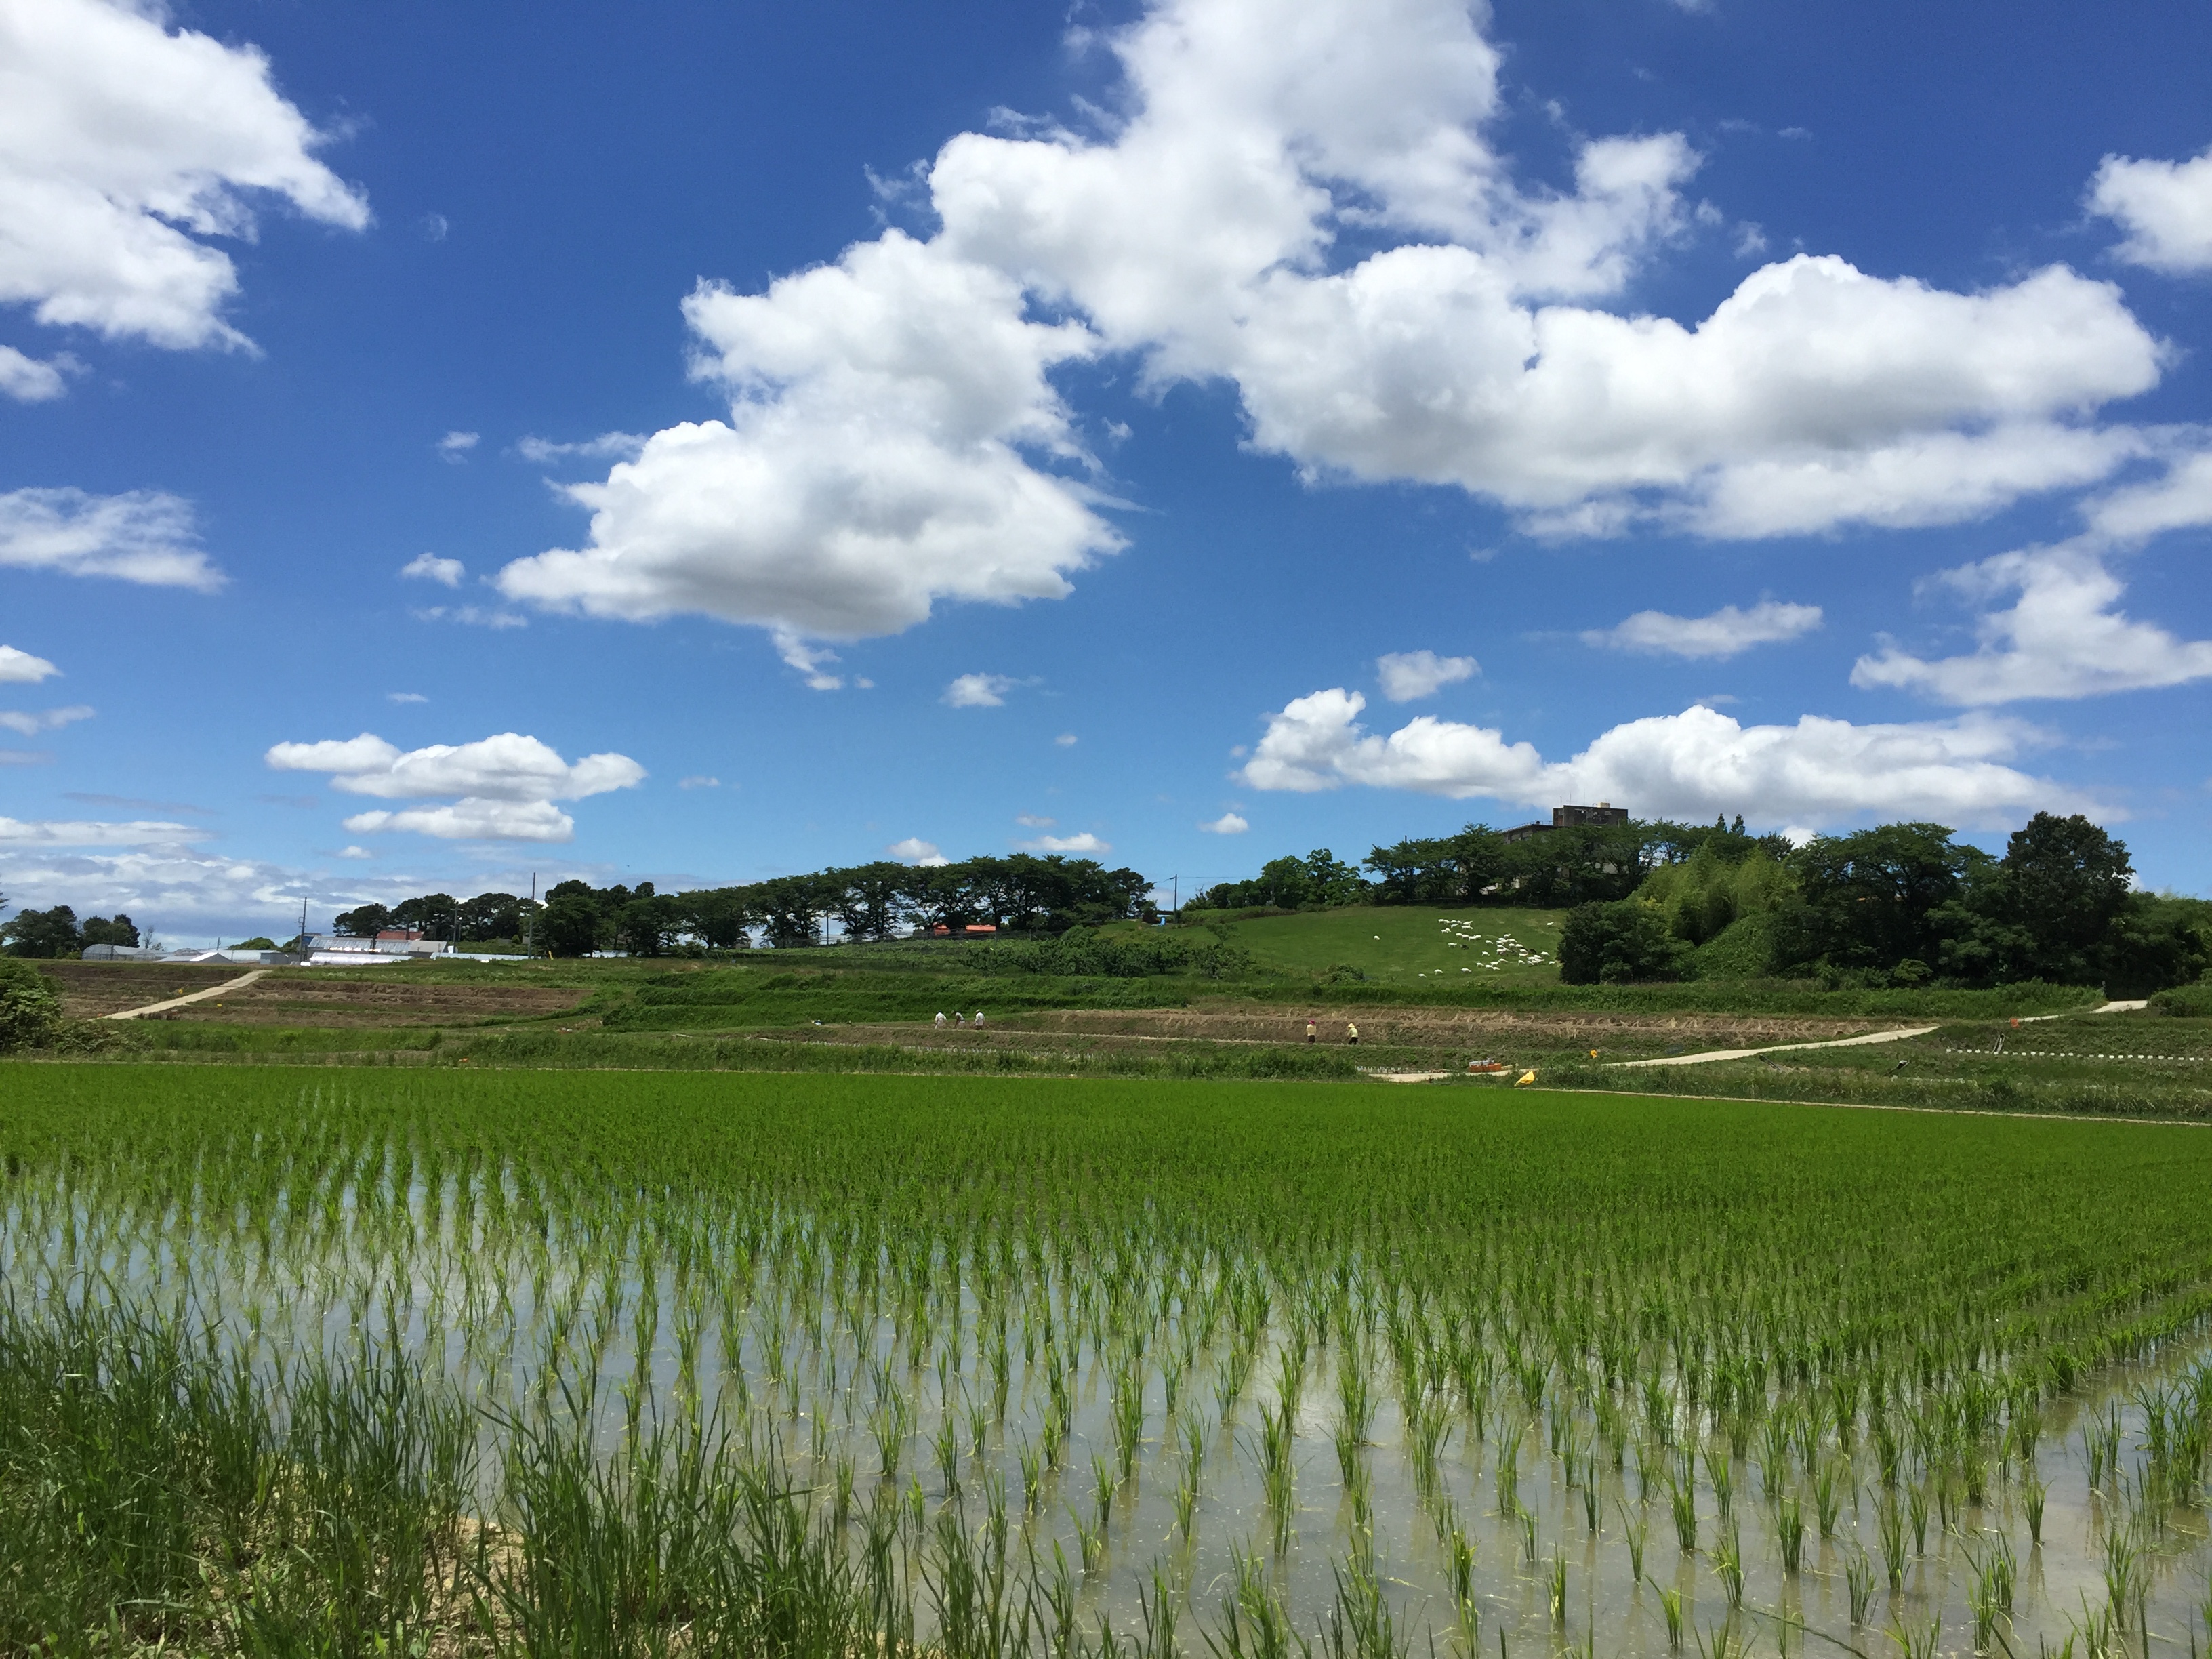 愛知県東郷町にある生命農学研究科附属の農場、東郷フィールドの様子。研究材料であるイネを東郷フィールドで育成し、大規模な遺伝解析を実施しています。